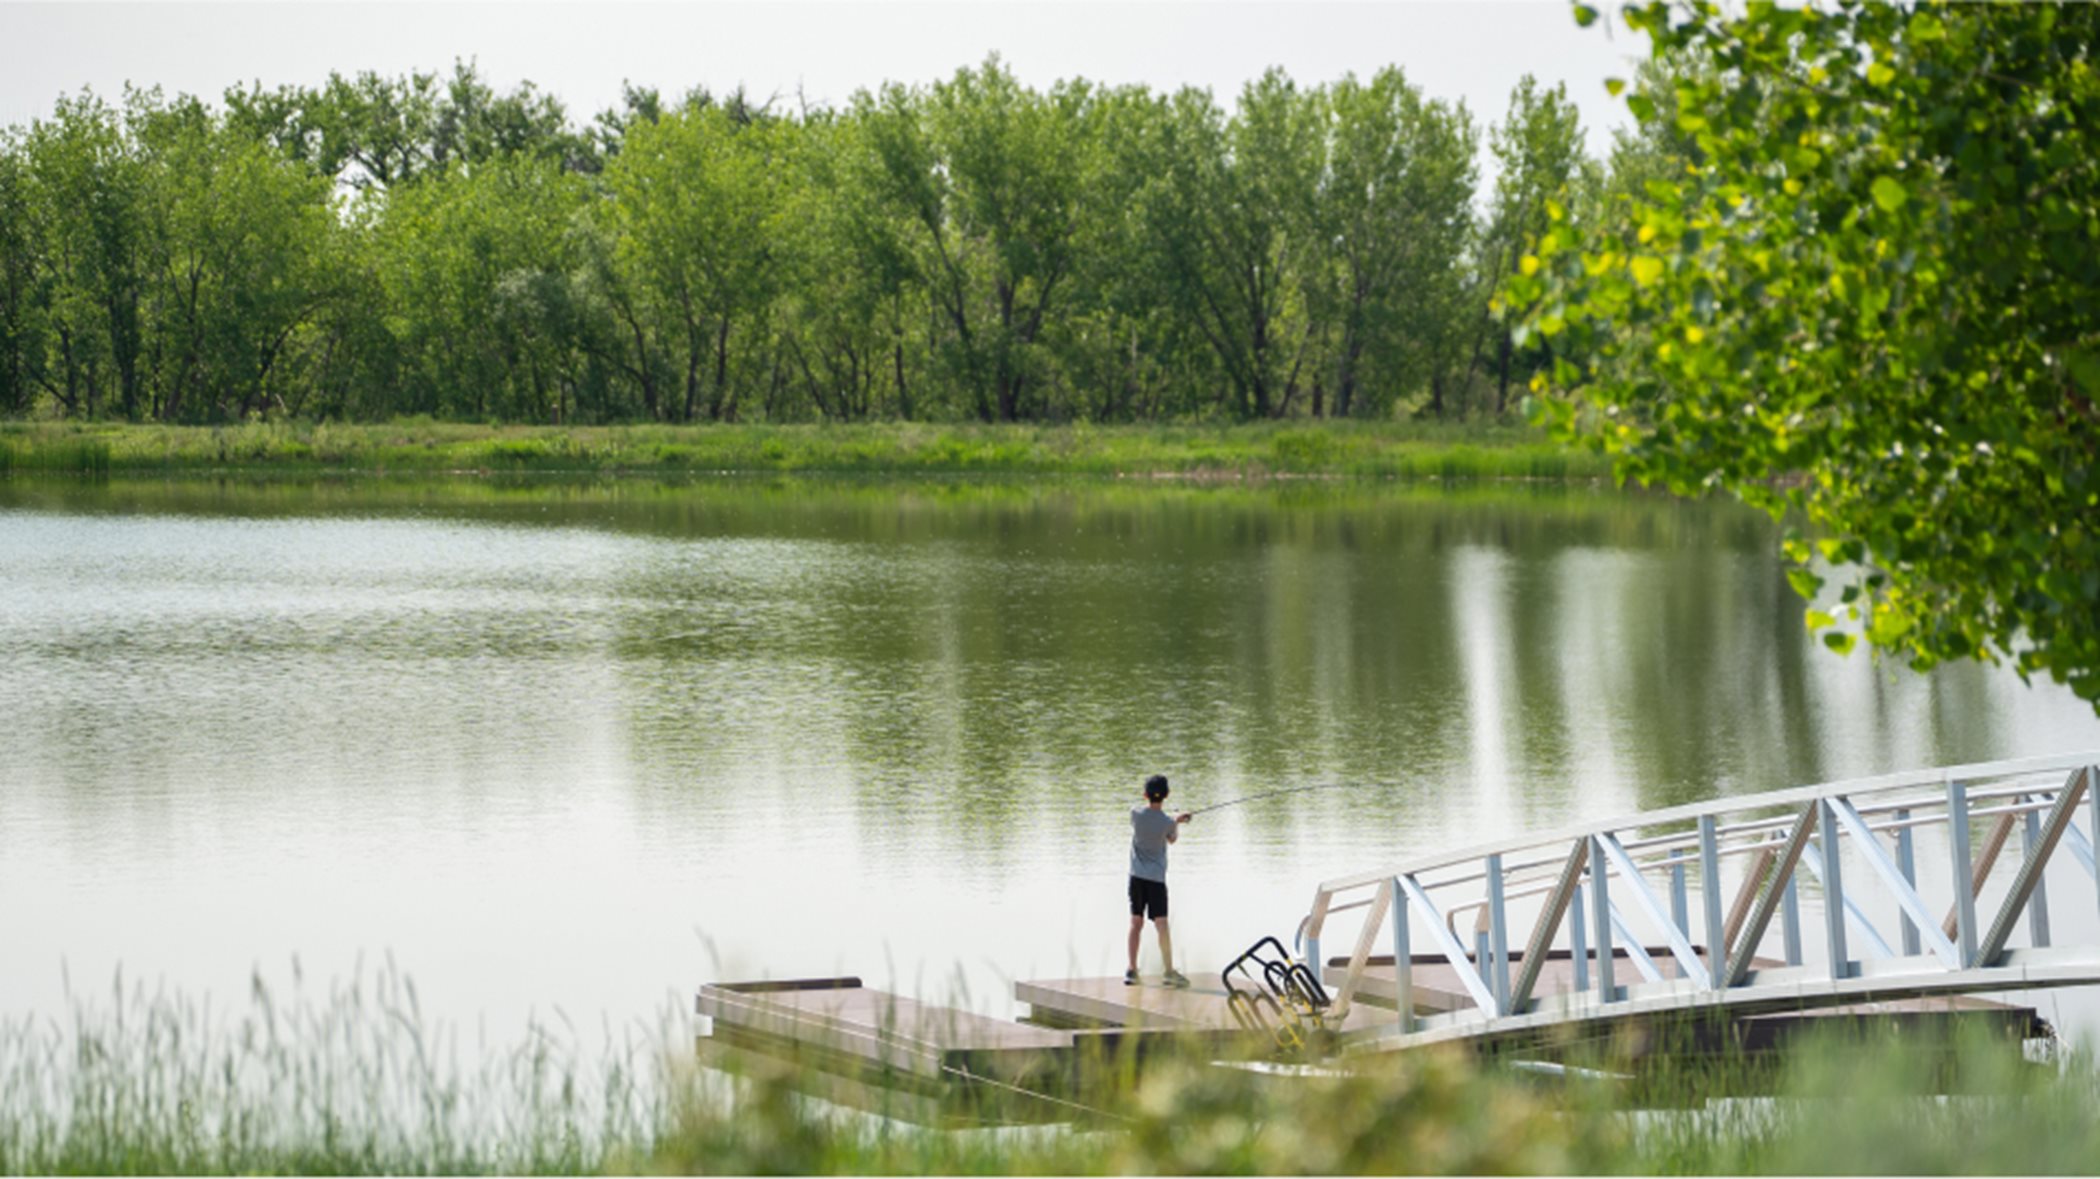 Barefoot Lakes lake amenity boy fishing on lake